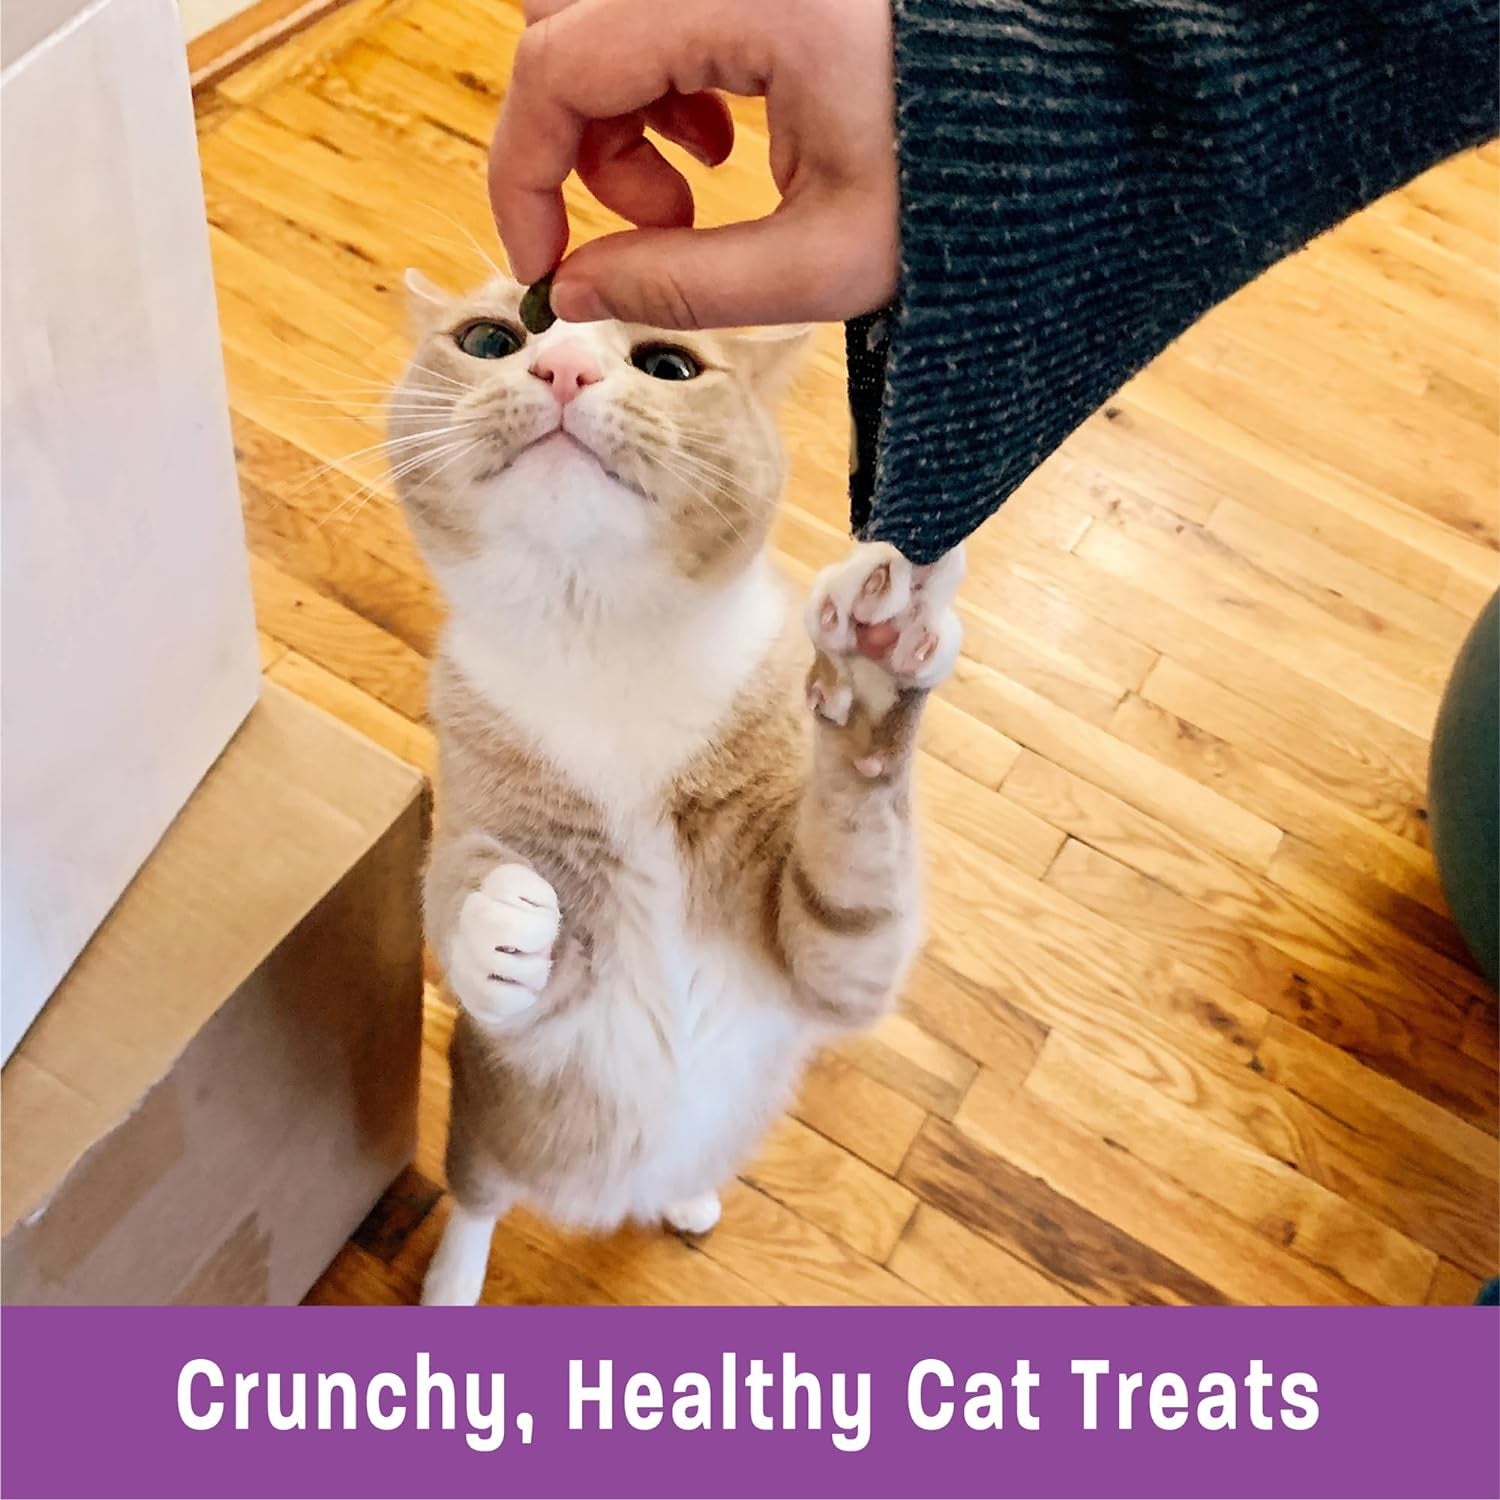 Wellness Kittles Crunchy Natural Grain Free Cat Treats, Chicken & Cranberry, 2-Ounce Bag